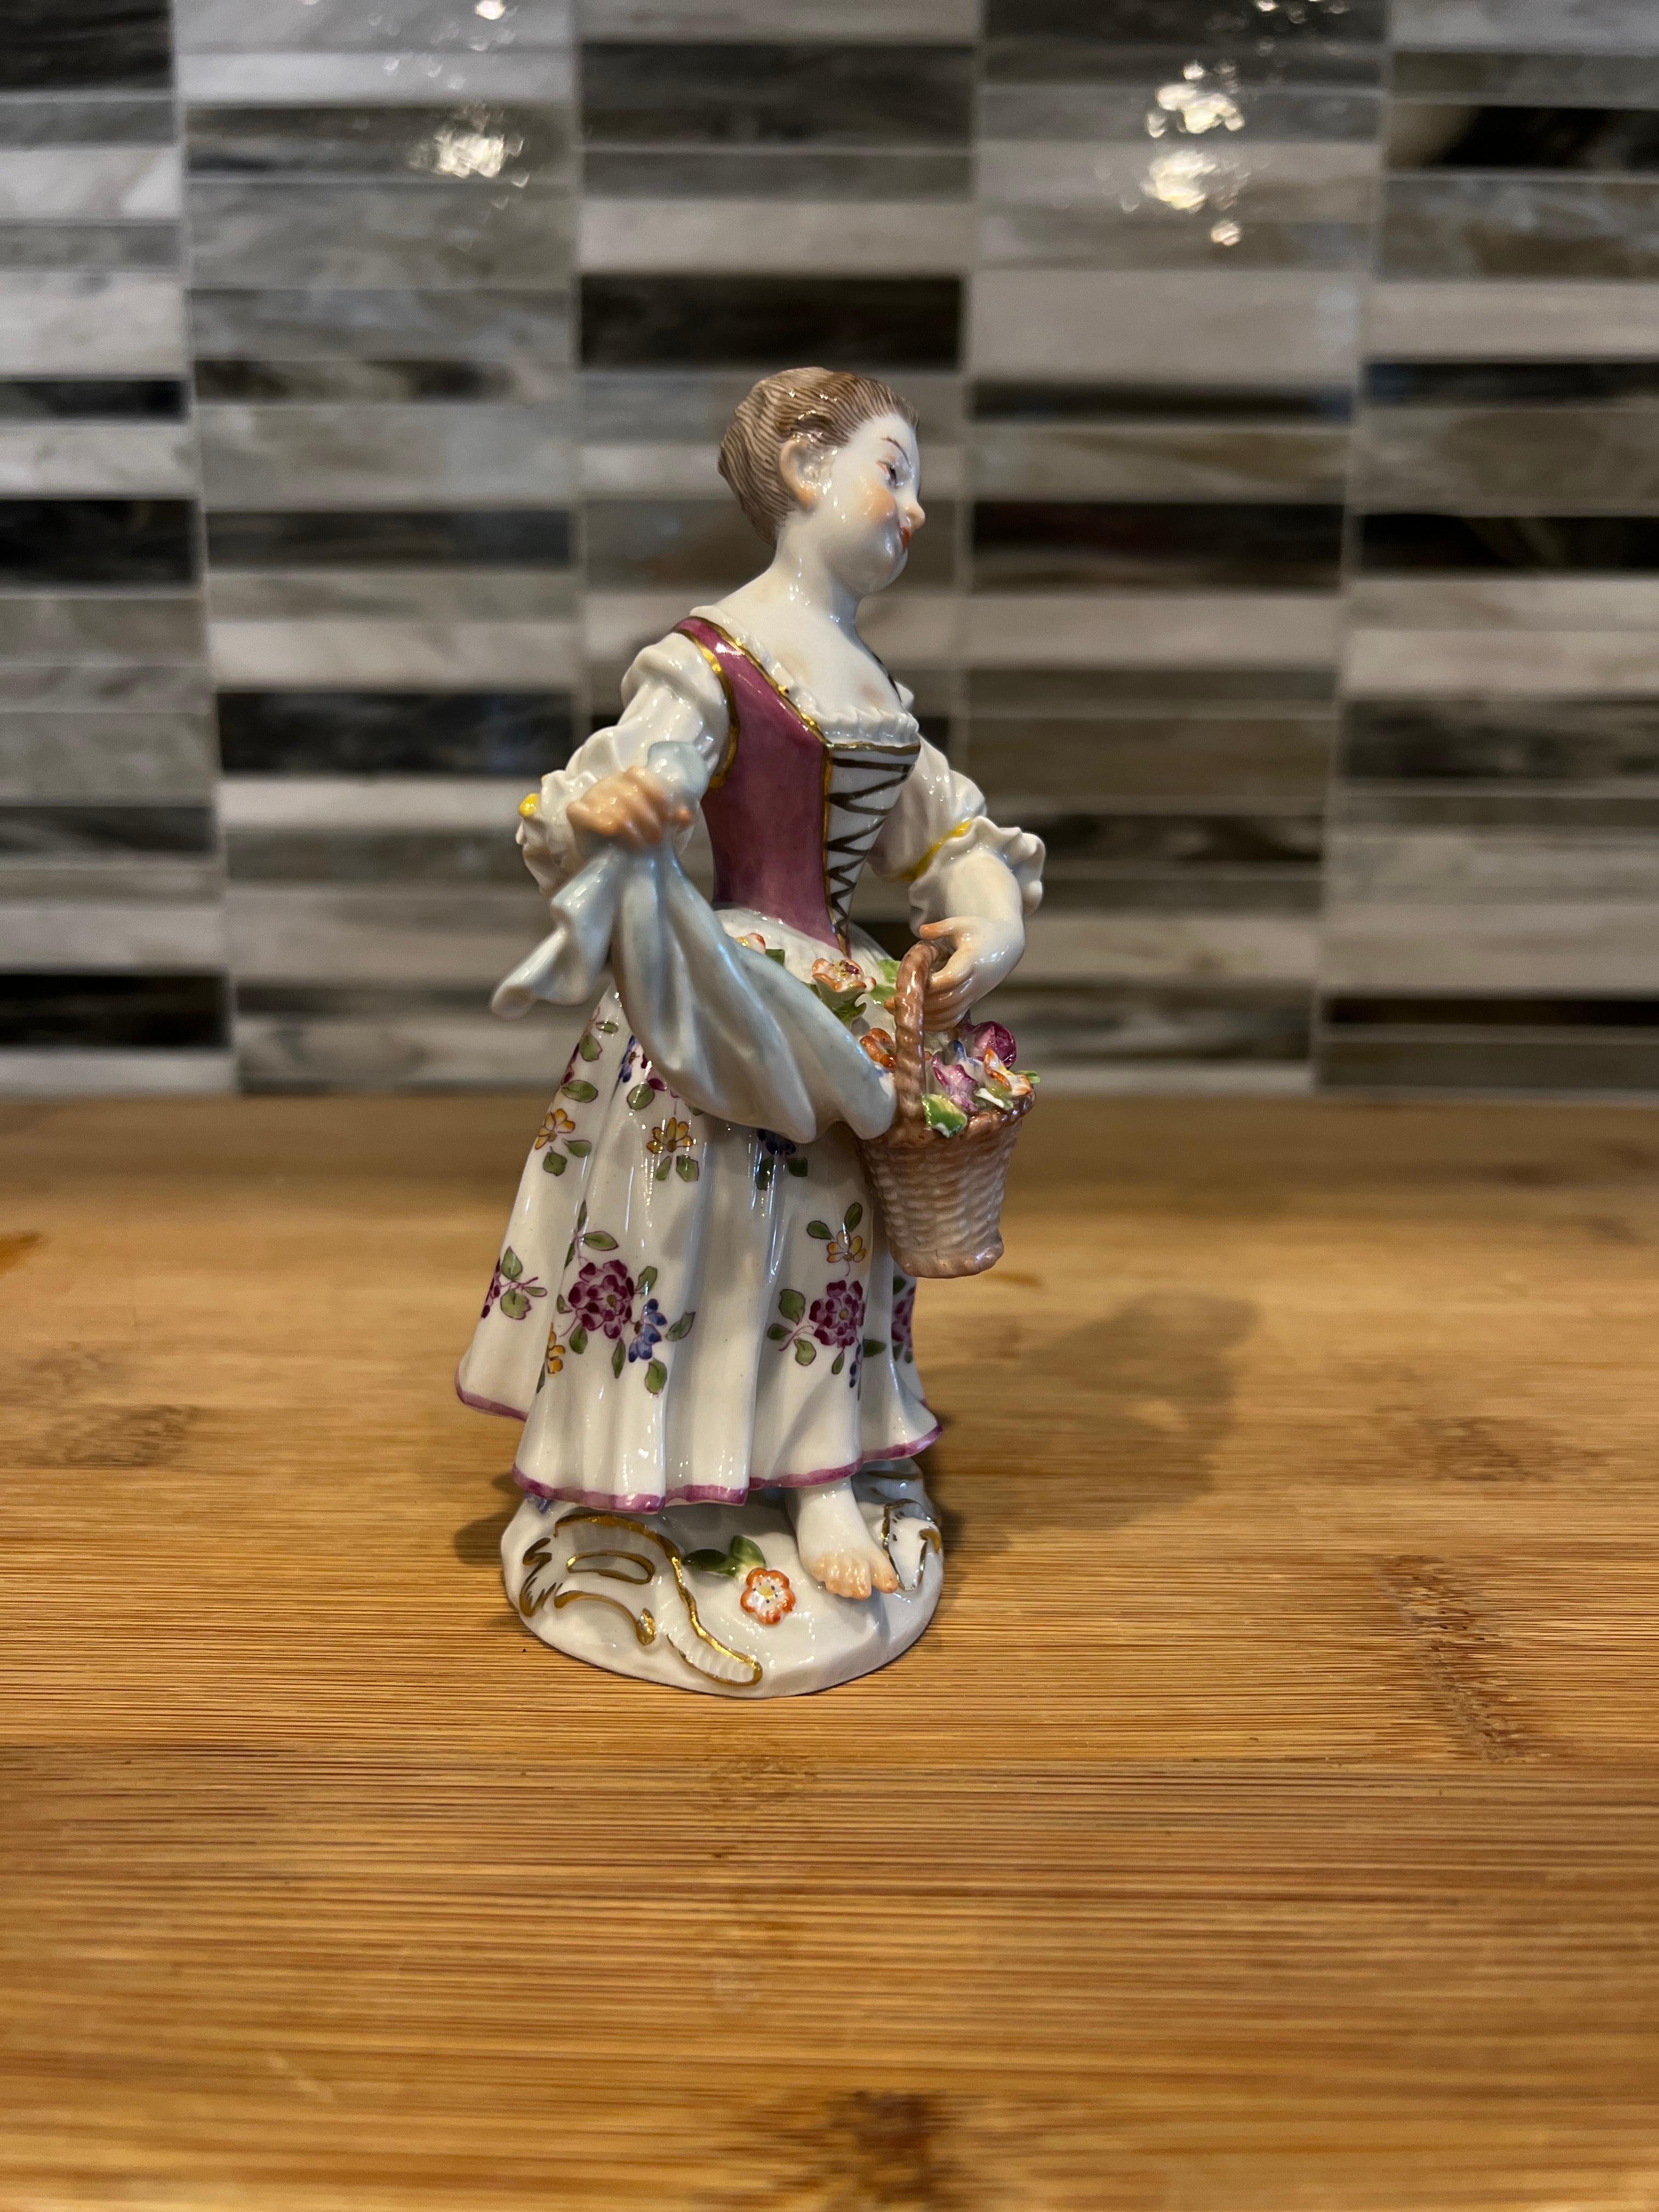 Jolie petite figurine d'une petite fille en robe et fleurs, réalisée par la célèbre manufacture allemande Meissen.  Le modèle a été créé dans les années 1770 par Johann J. Kändler dans le cadre de la série 